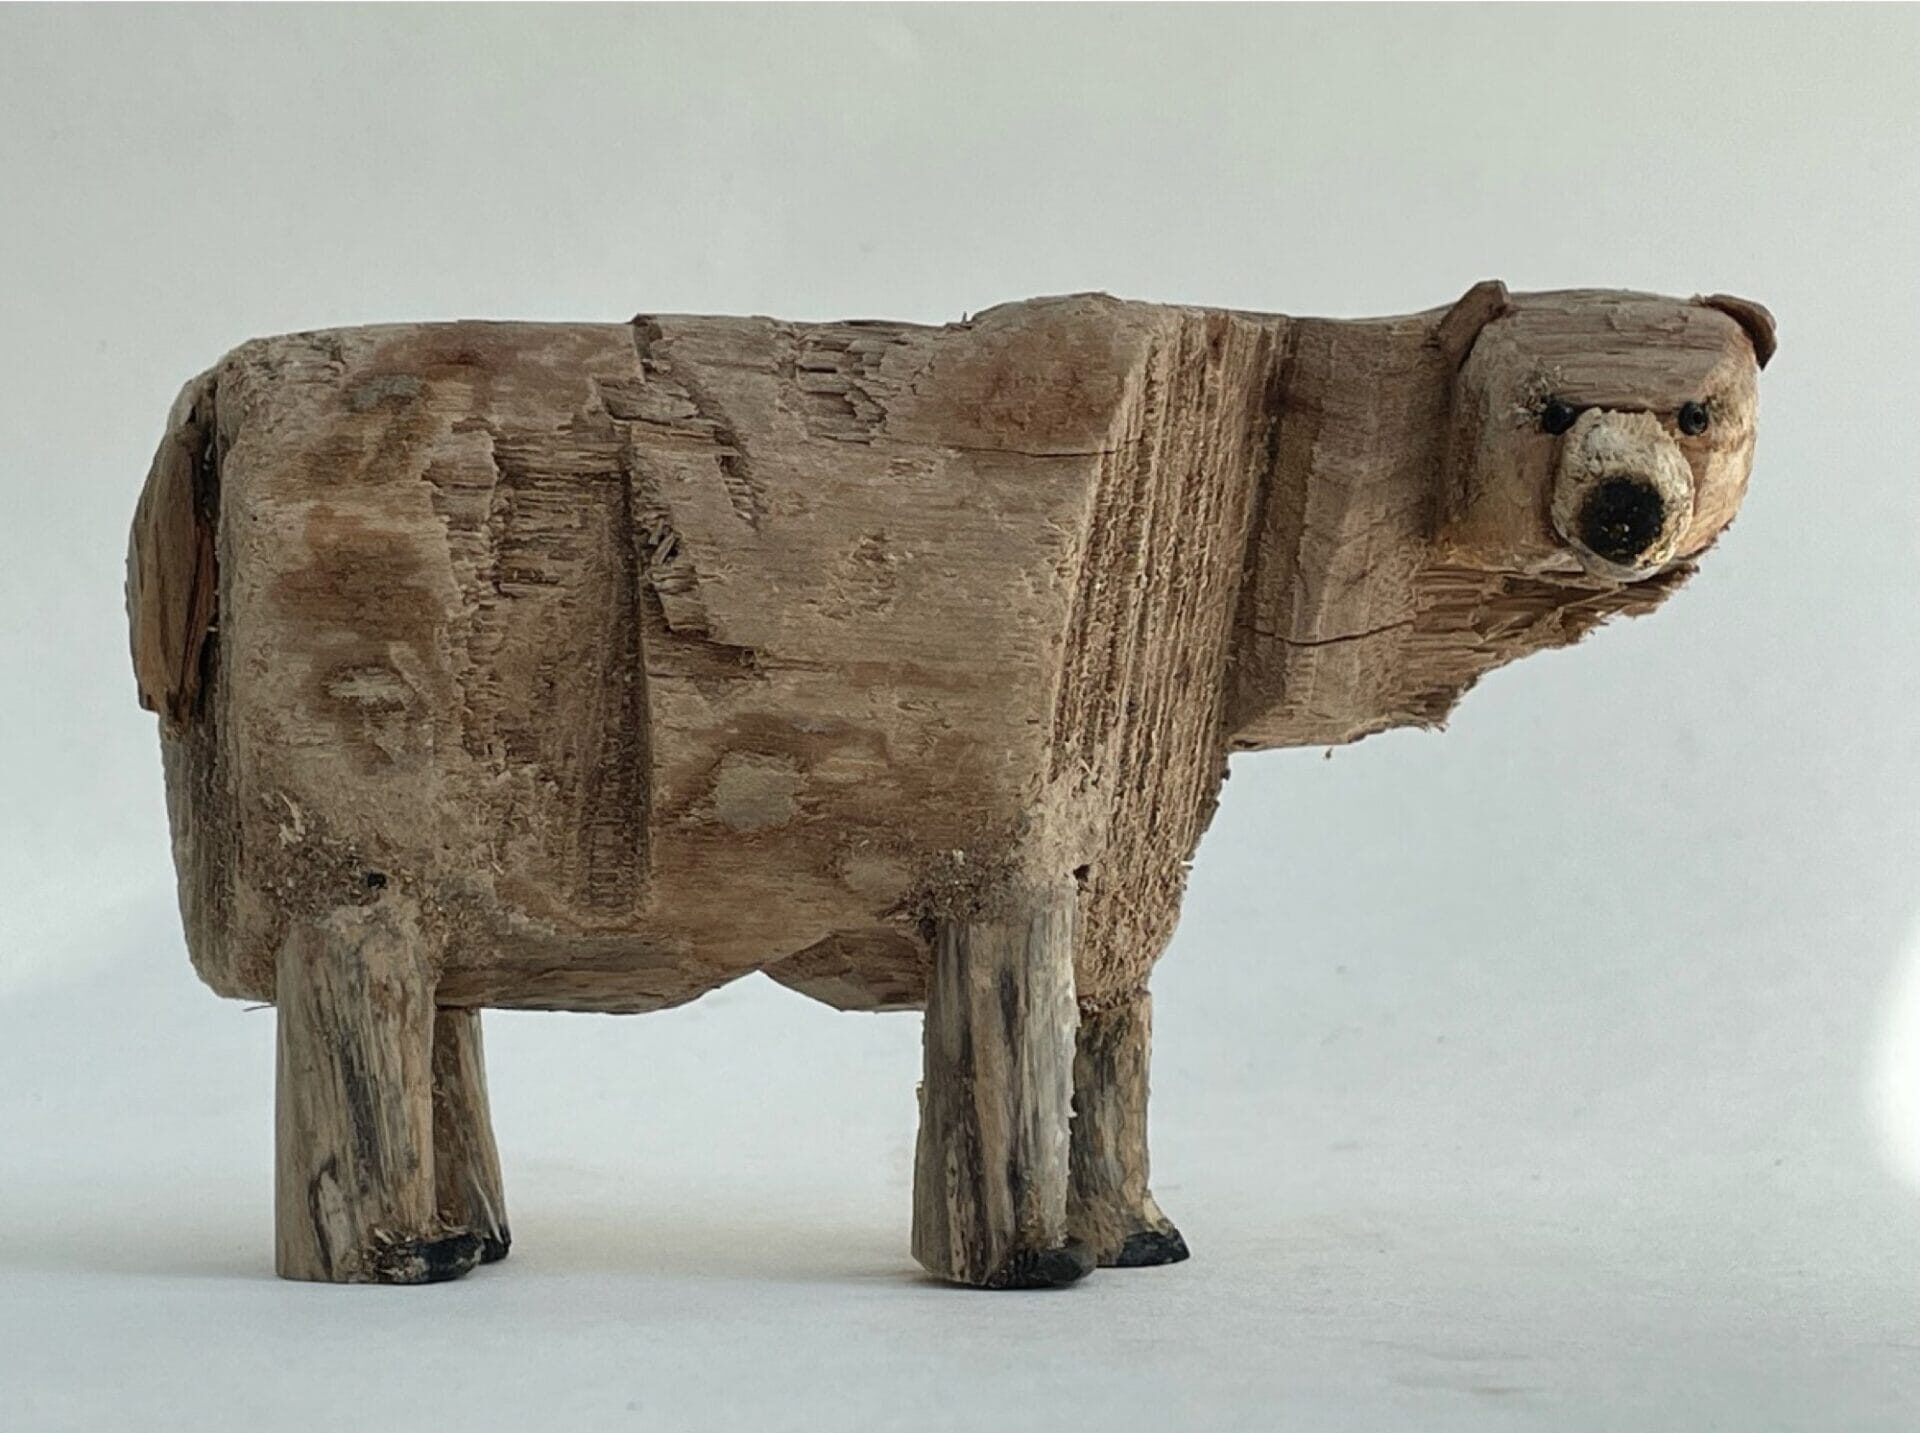 a sculpture of a polar bear made from driftwood